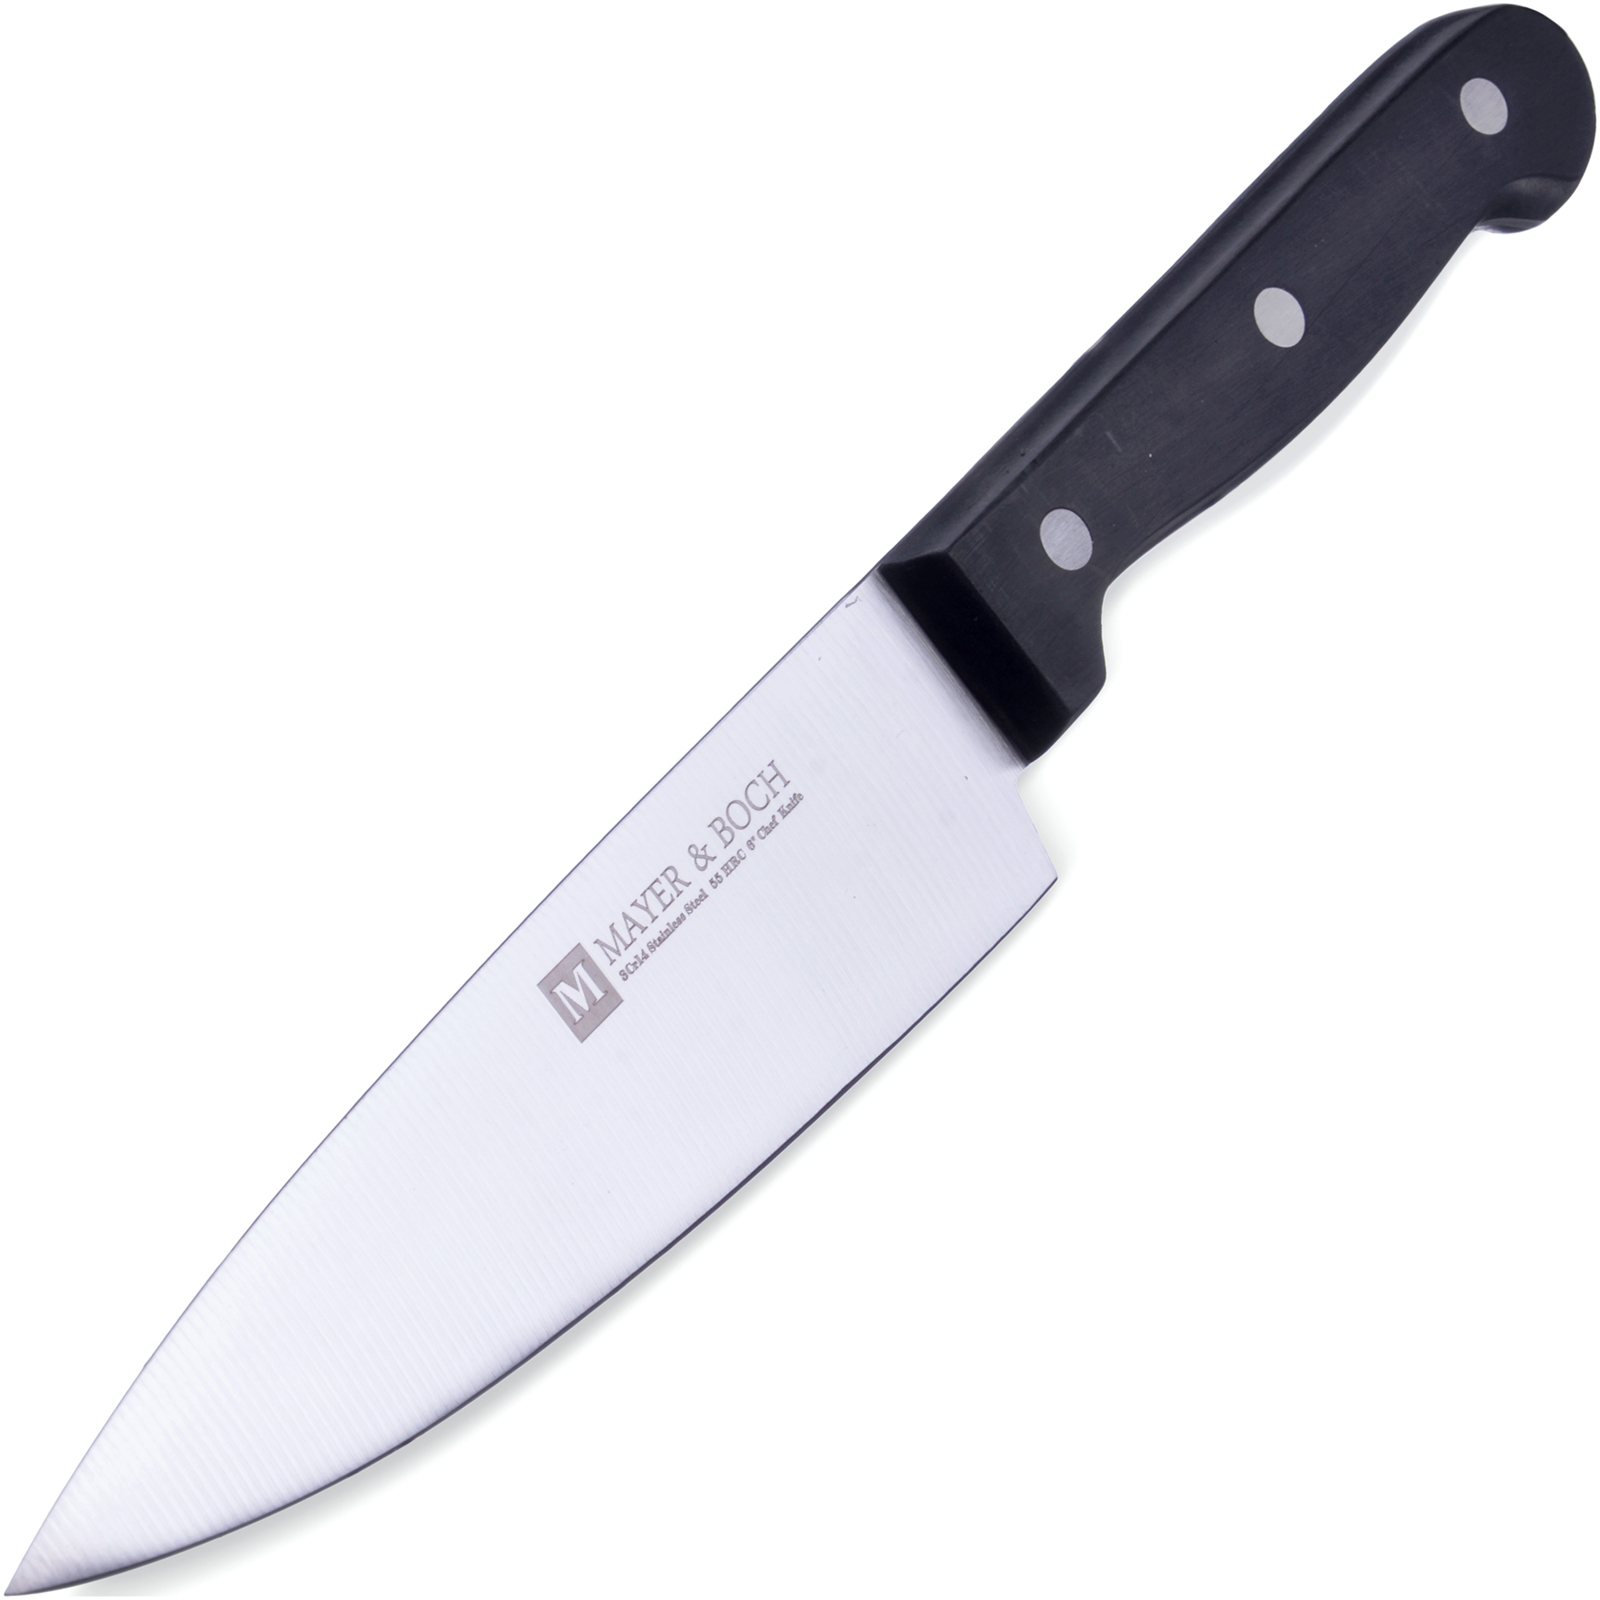 фото Нож поварской Mayer & Boch Maryam, цвет: серебристый, черный, длина 27,9 см